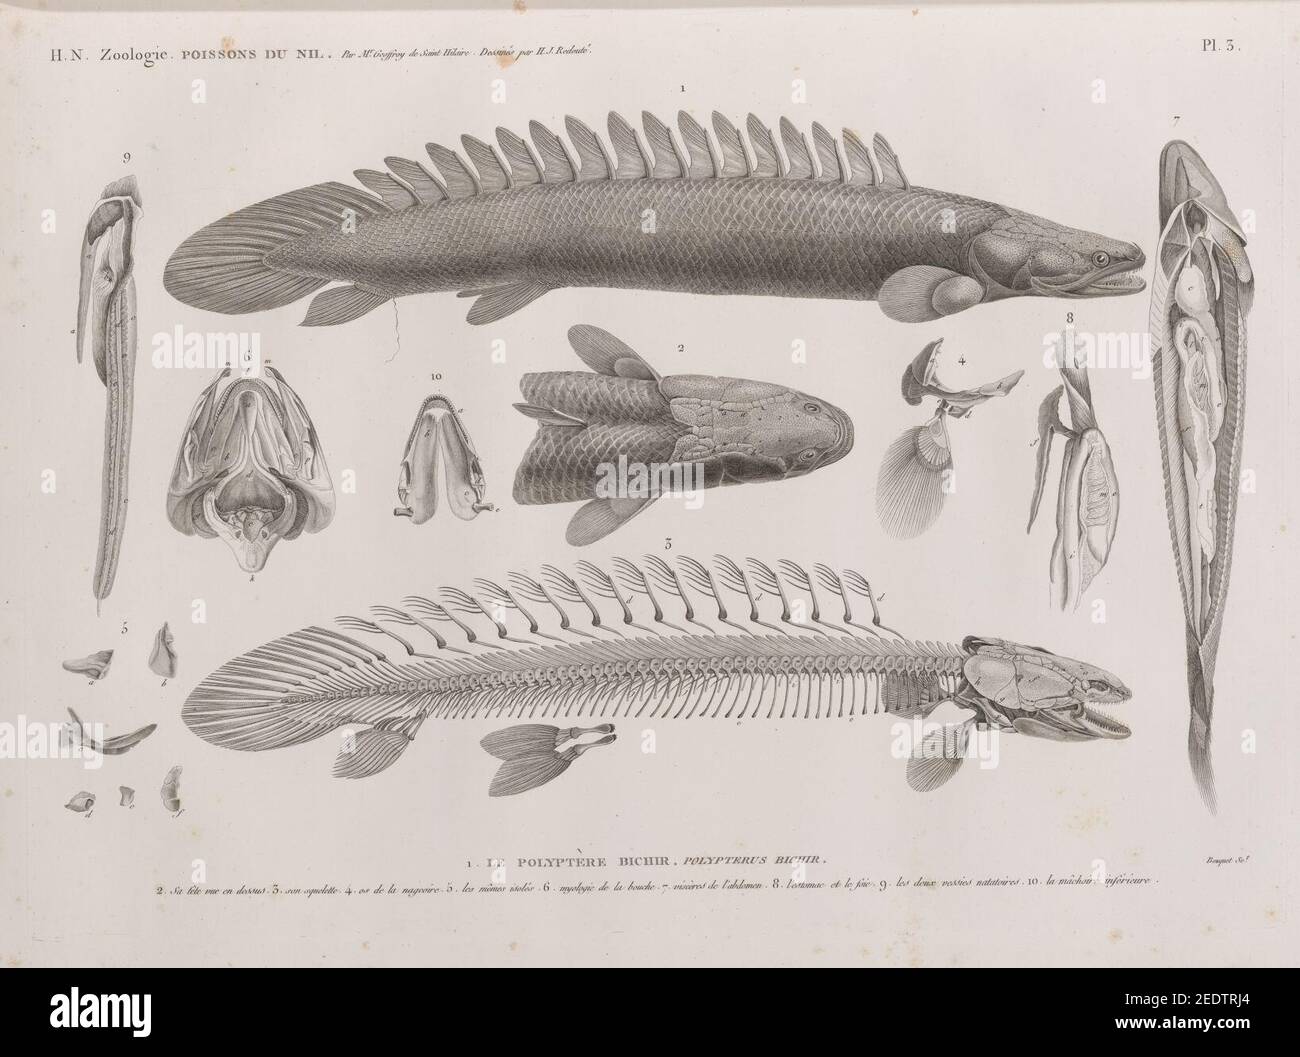 Zoologie. Poissons du Nil. 1. Le Polyptère bichir (Polypterus bichir); 2. sa tête vue en dessus, 3. Son squelette, 4. os de la nageoire, 5. les mêmes isolés, 6. Myologie de la bouche, 7. Stockfoto